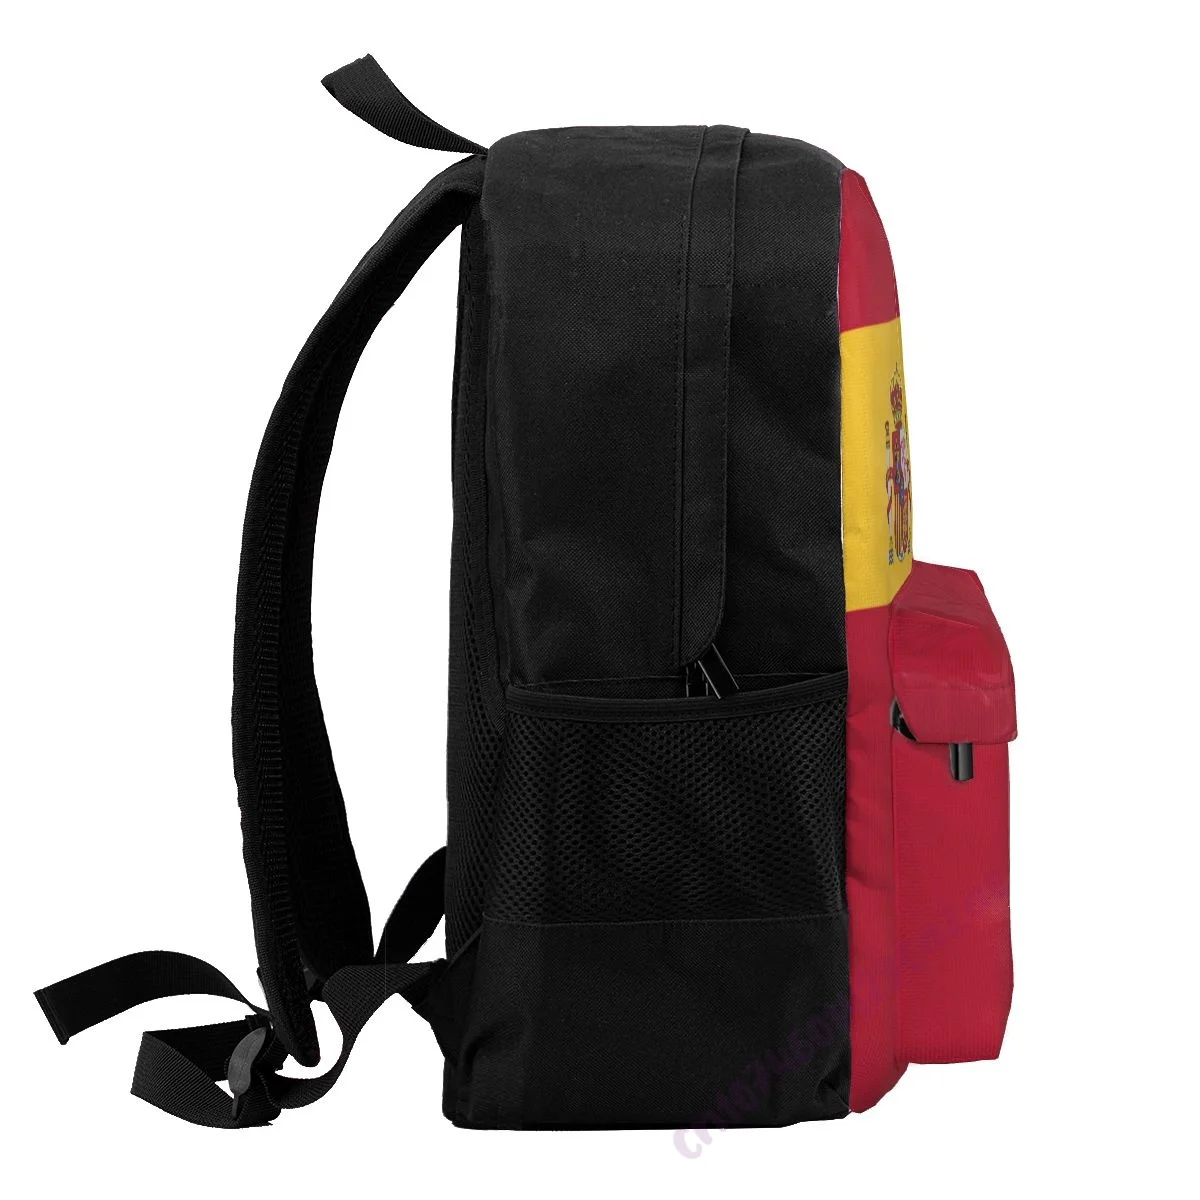 Пользовательское название Рюкзак из полиэстера с флагом Испании для мужчин и женщин, дорожная сумка, Повседневная Студенческая походная сумка, кемпинг - 4